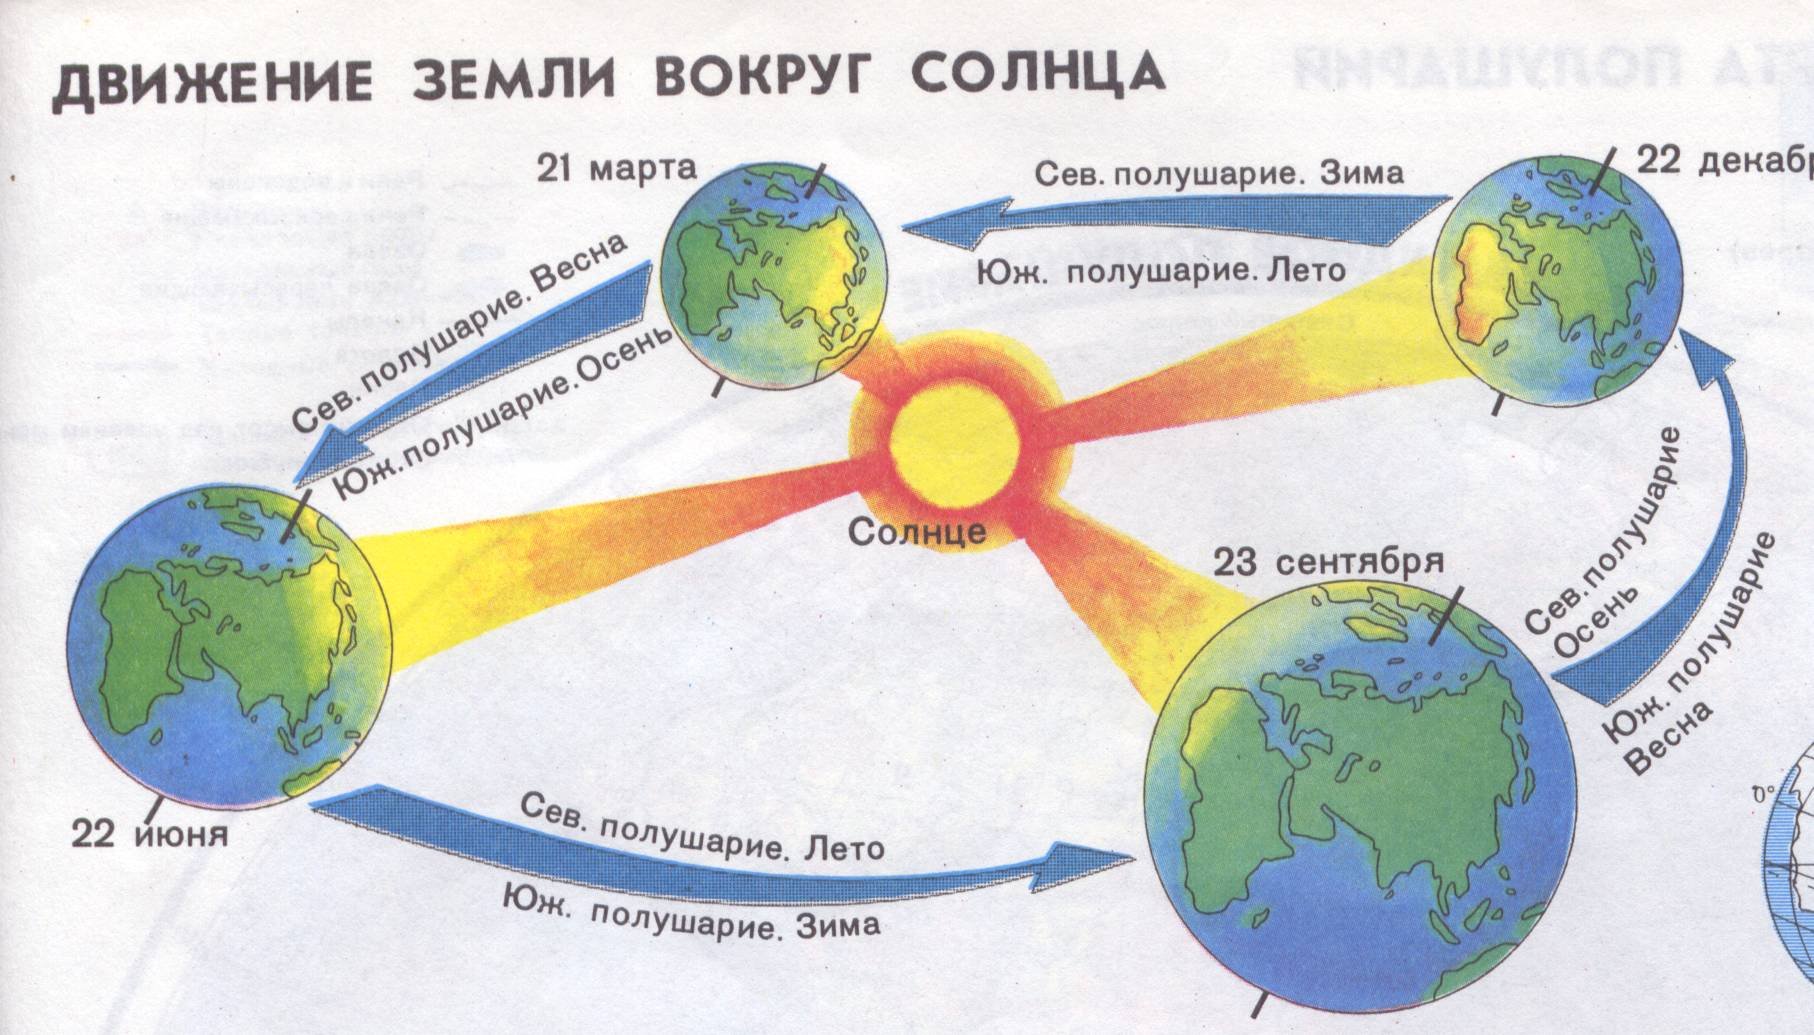 Вокруг насколько. Схема движения земли вокруг солнца. Вращение земли вокруг солнца. Смена времен года схема. Вращение земли вокруг солнца зима лето.